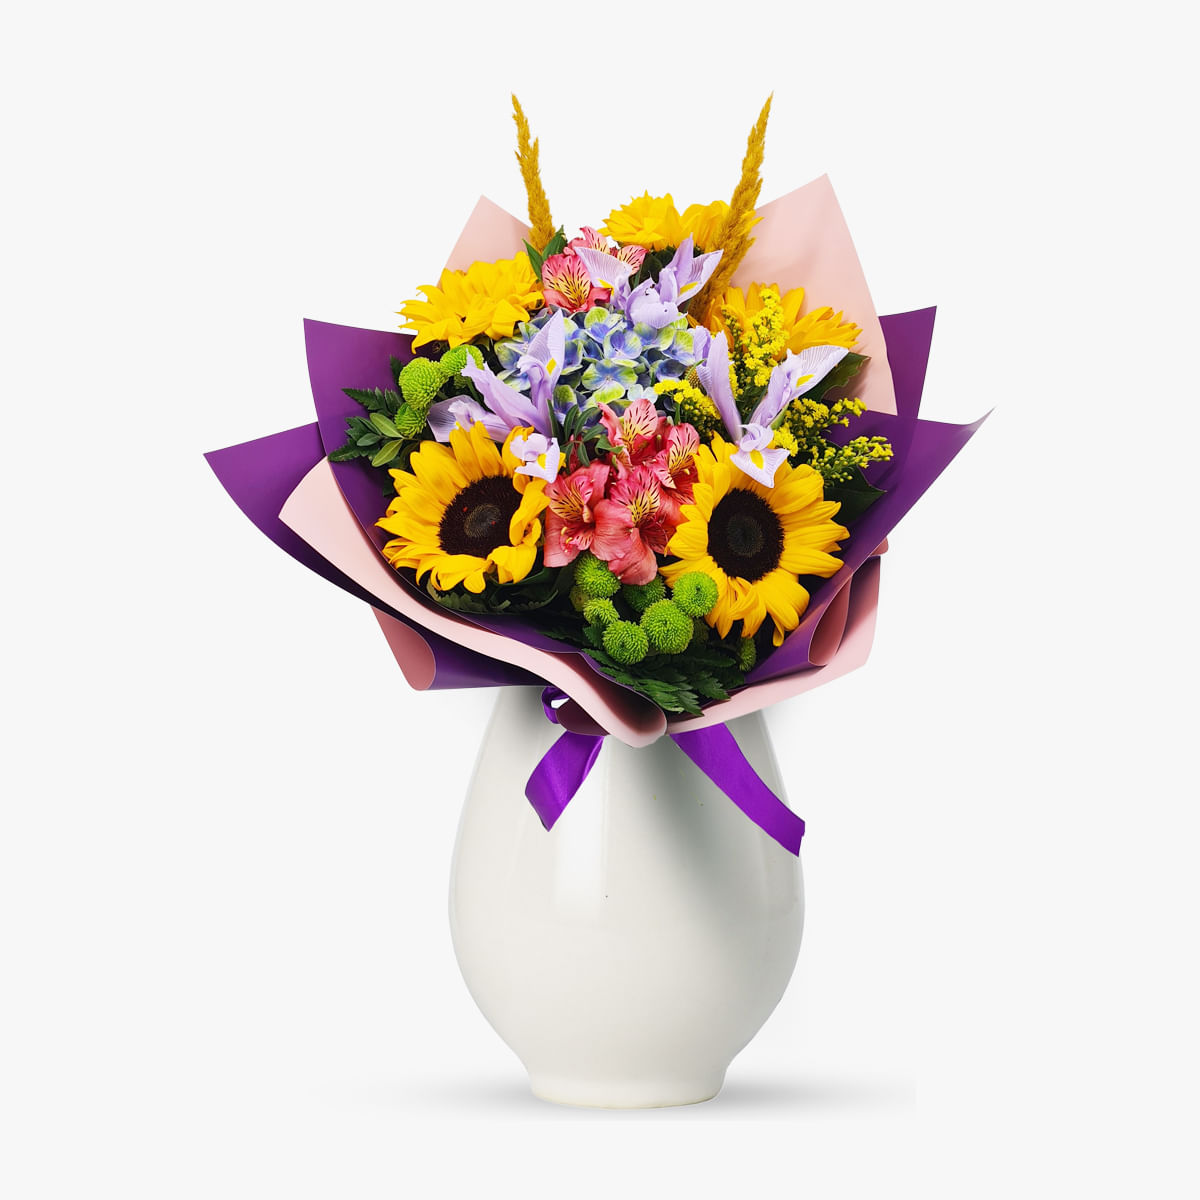 Buchet cu floarea soarelui si iris, hortensie, pampas, alstroemeria superbe